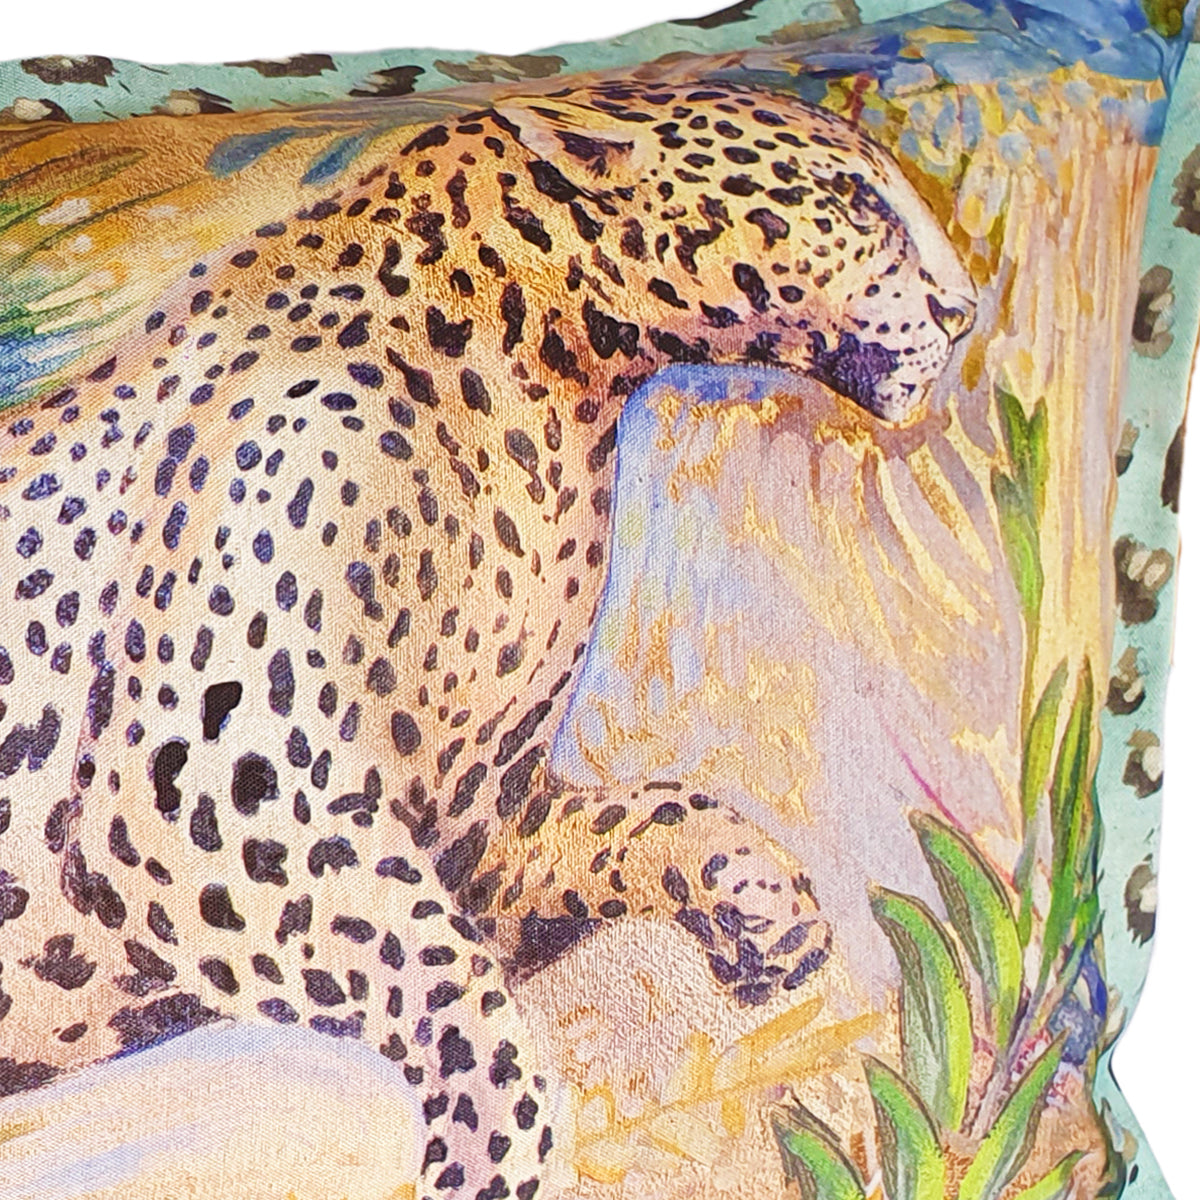 Gold Leopard Cushion Cover, Cotton-linen blend with spot trim